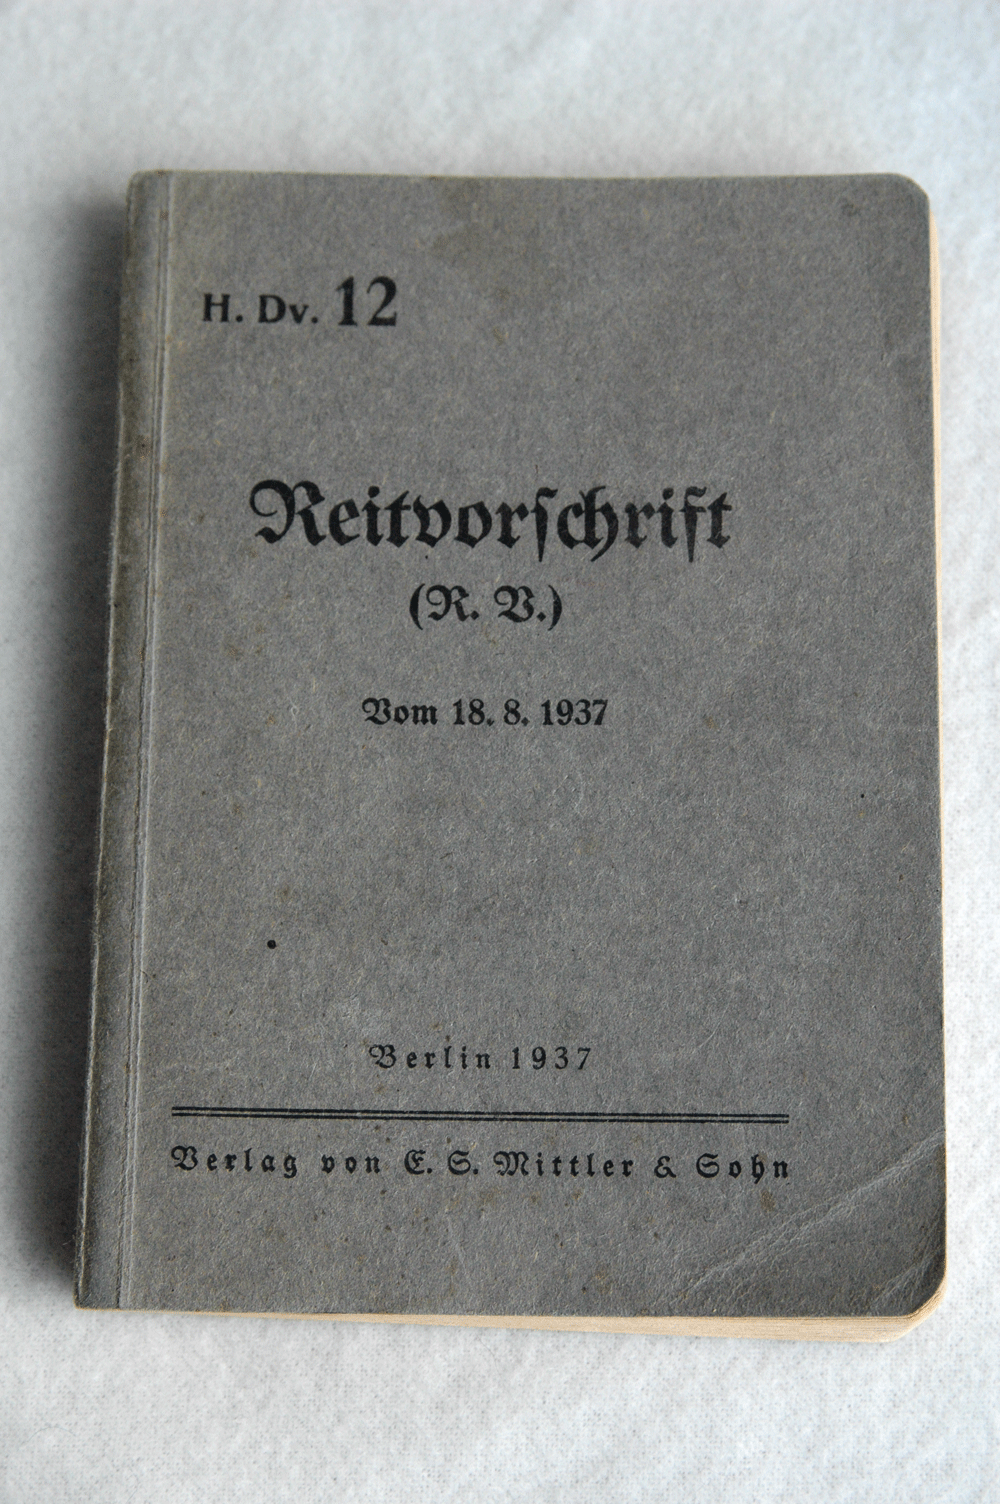 Verlag von E.G. Mittler & Sohn, Reitvorschrift (R.B.) vom 18.8.1937, Berlin